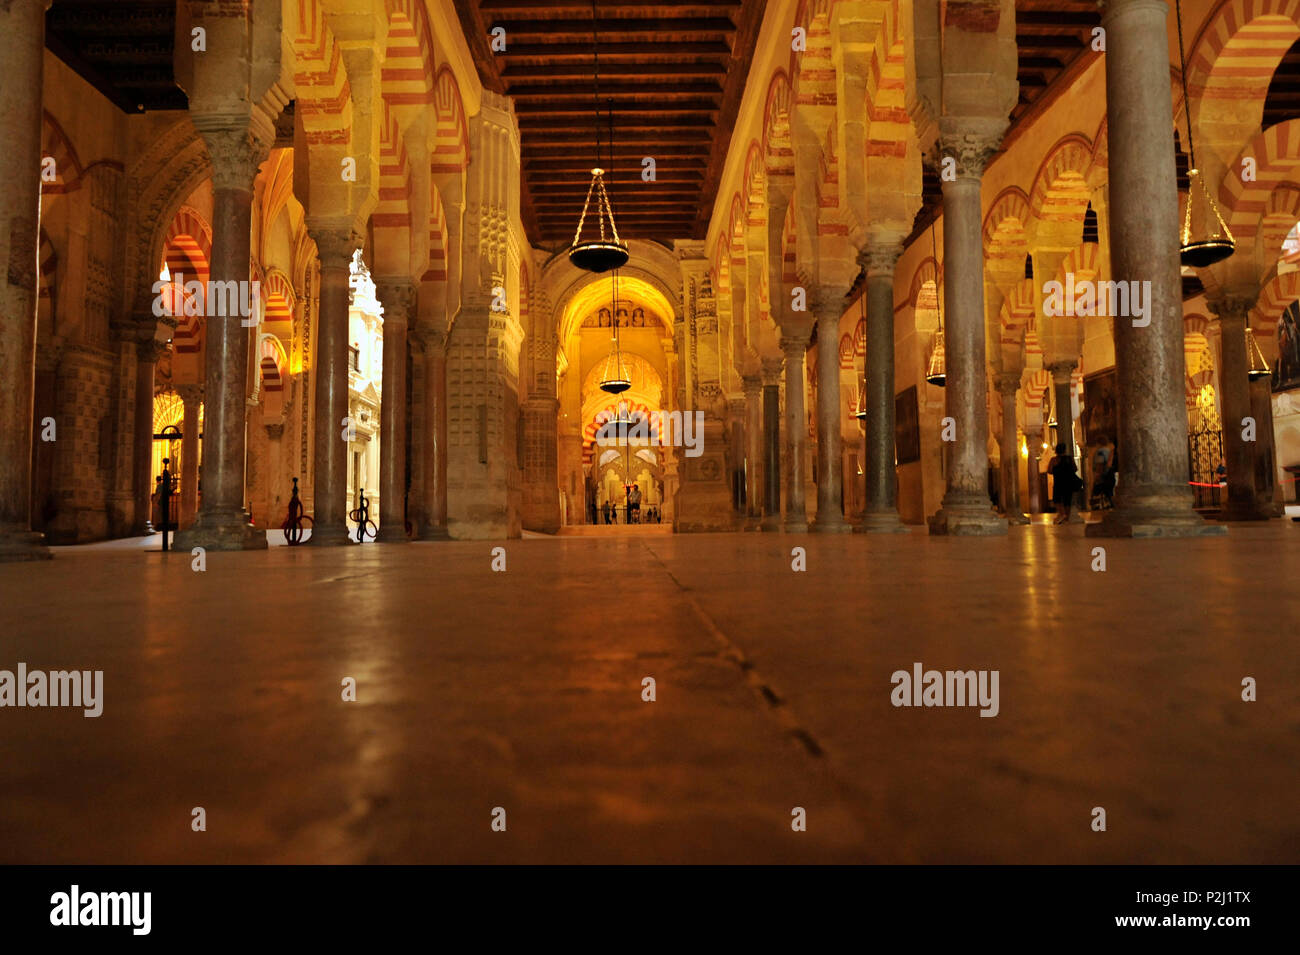 Spalten in der Mezquita in Cordoba, Andalusien, Spanien Stockfoto